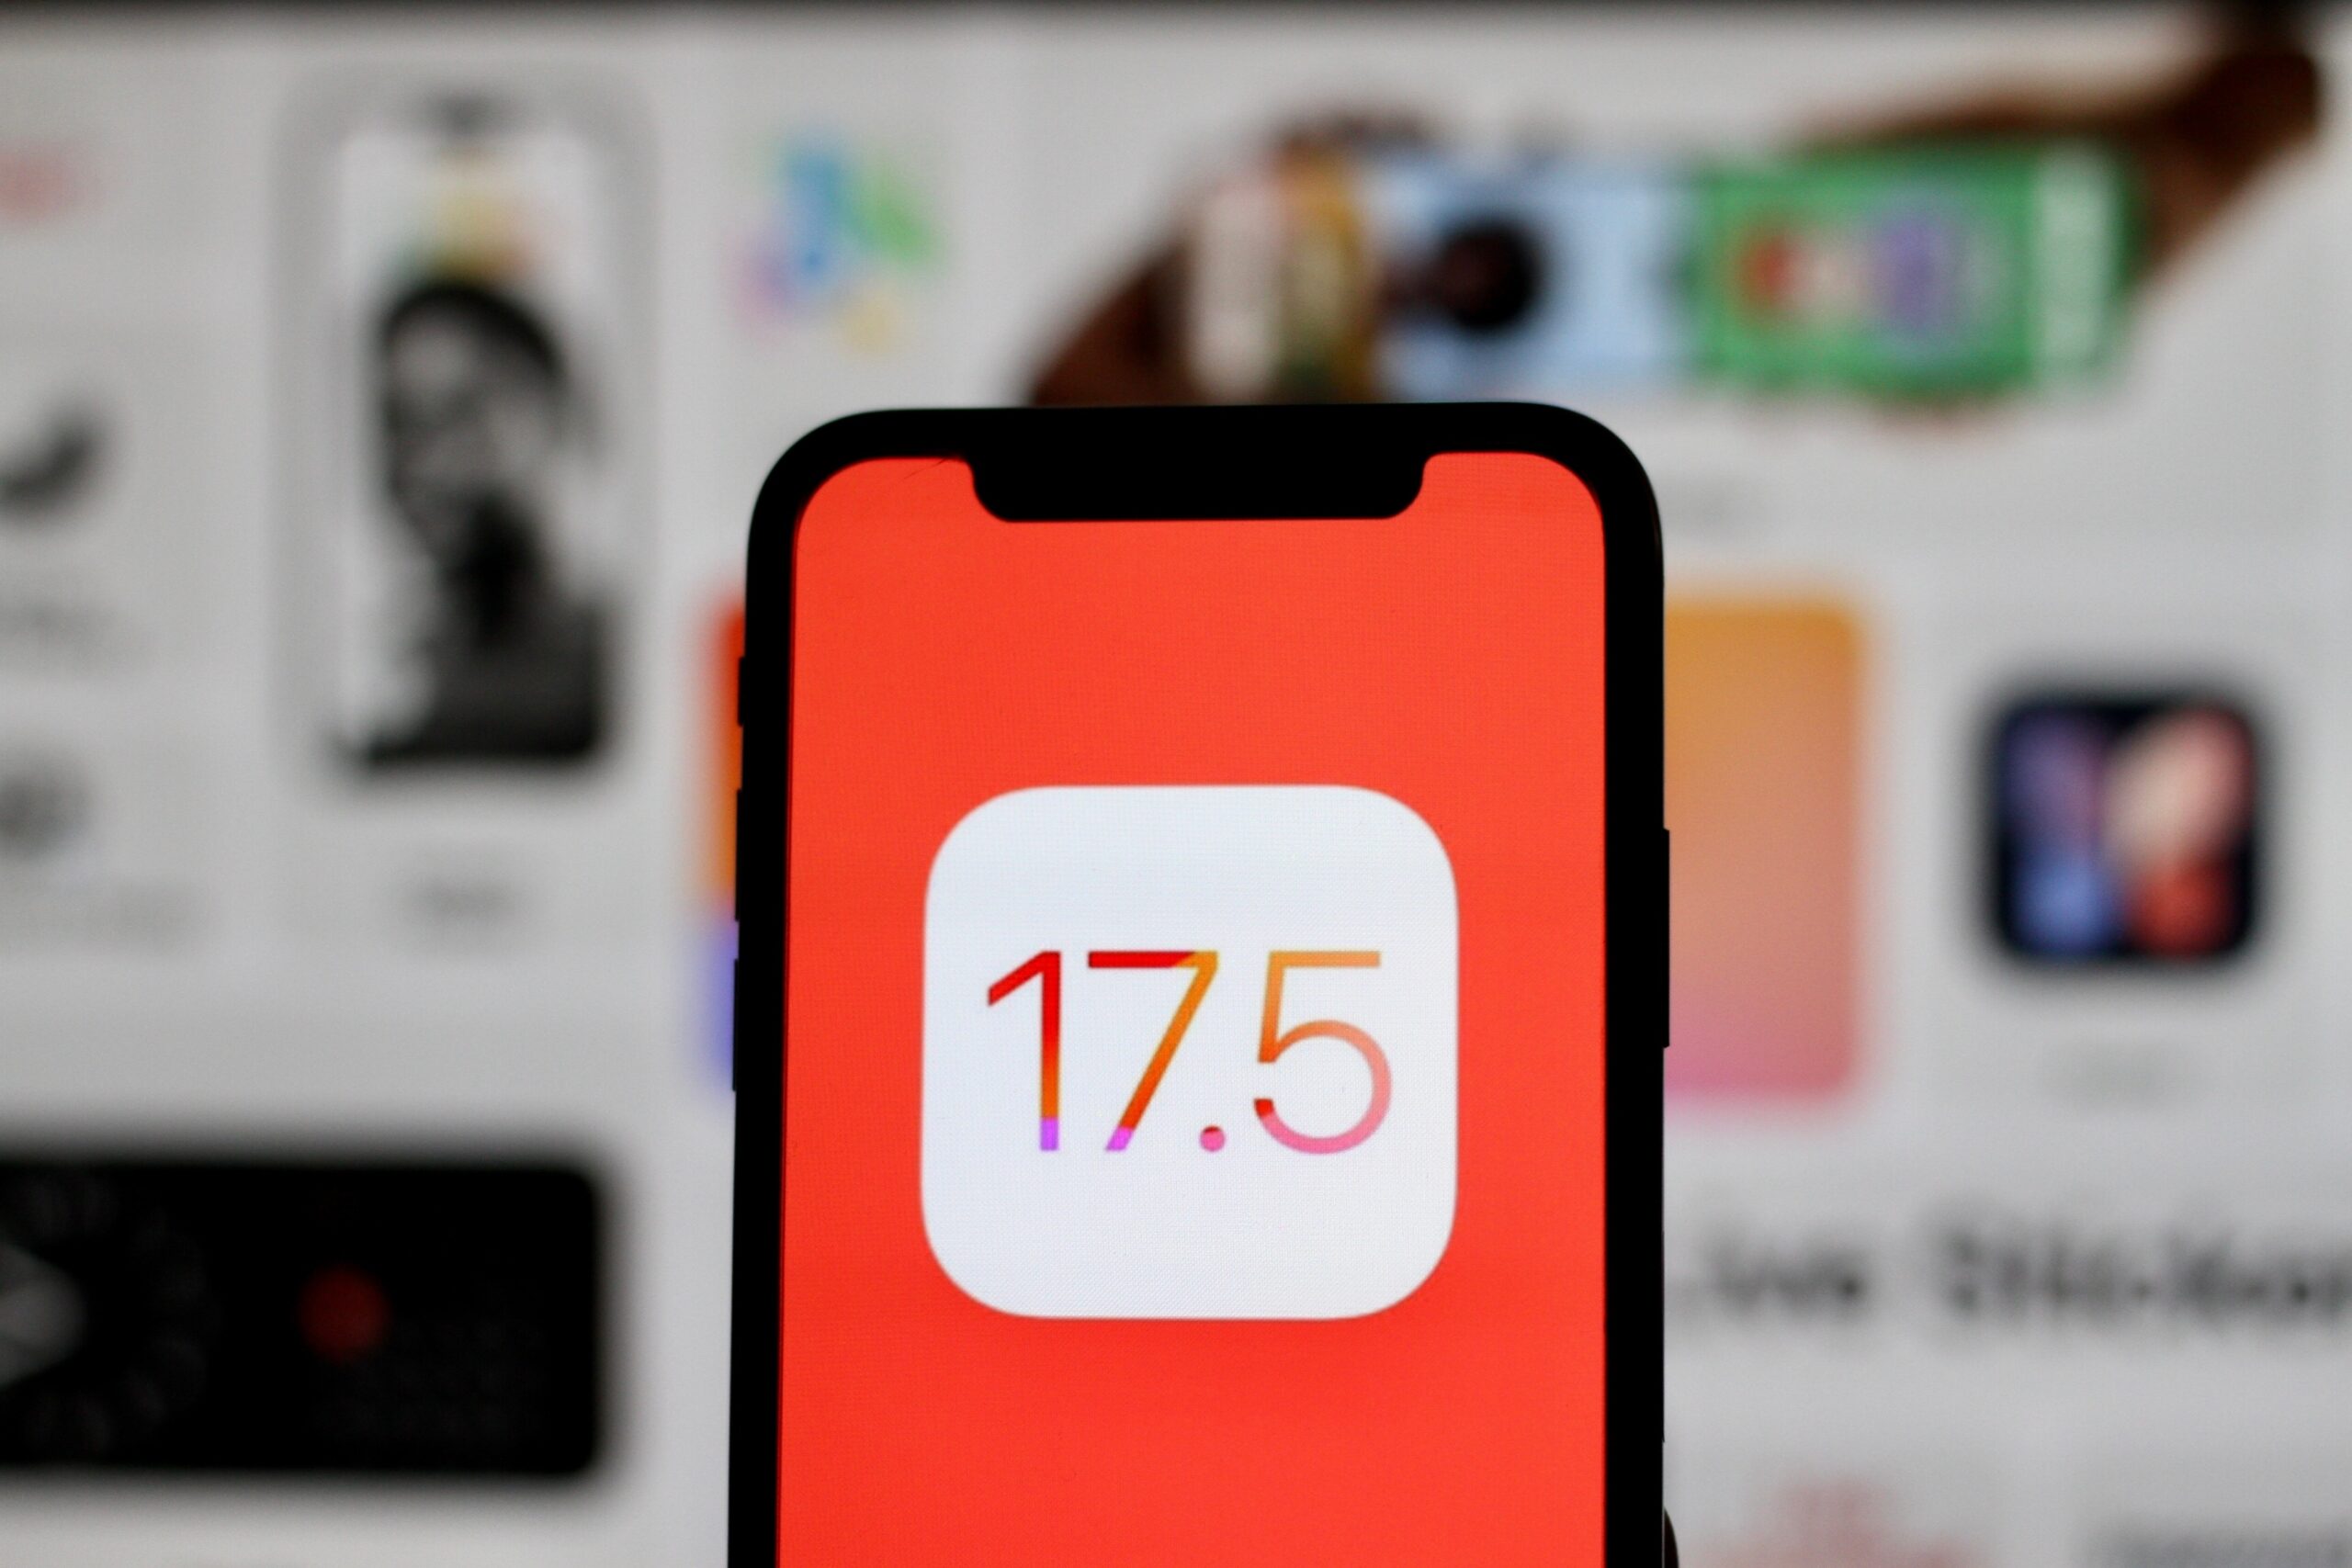 Ekran smartfona z logo iOS 17.5 na pomarańczowym tle.